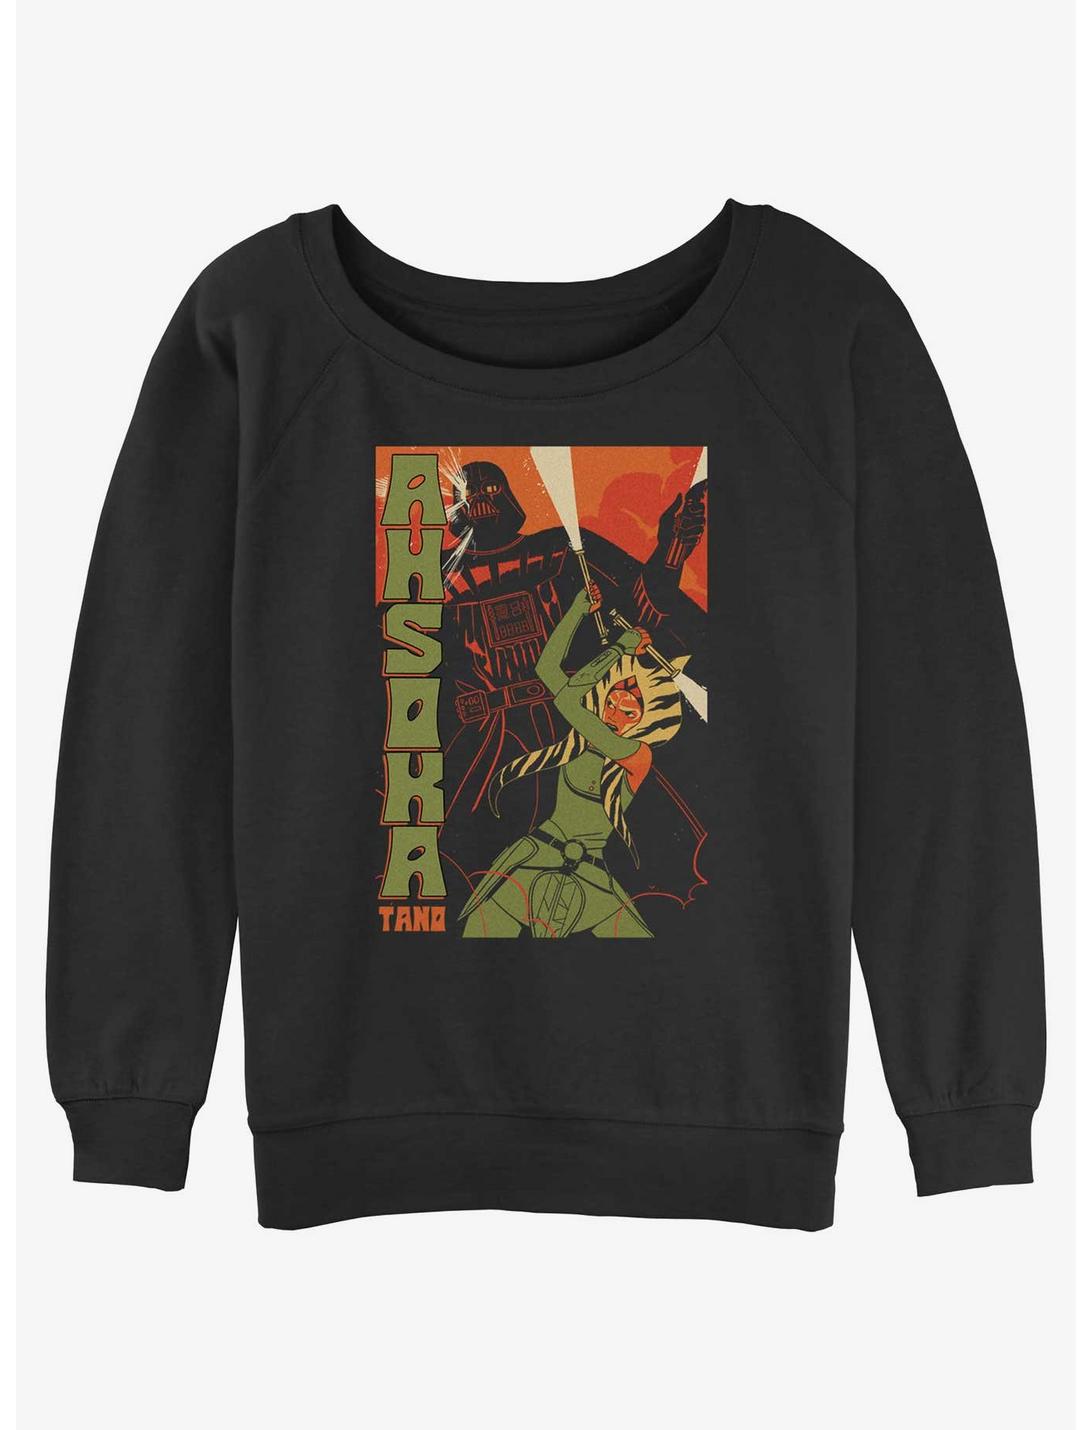 Star Wars Ahsoka Tano and Darth Vader Poster Womens Slouchy Sweatshirt, BLACK, hi-res